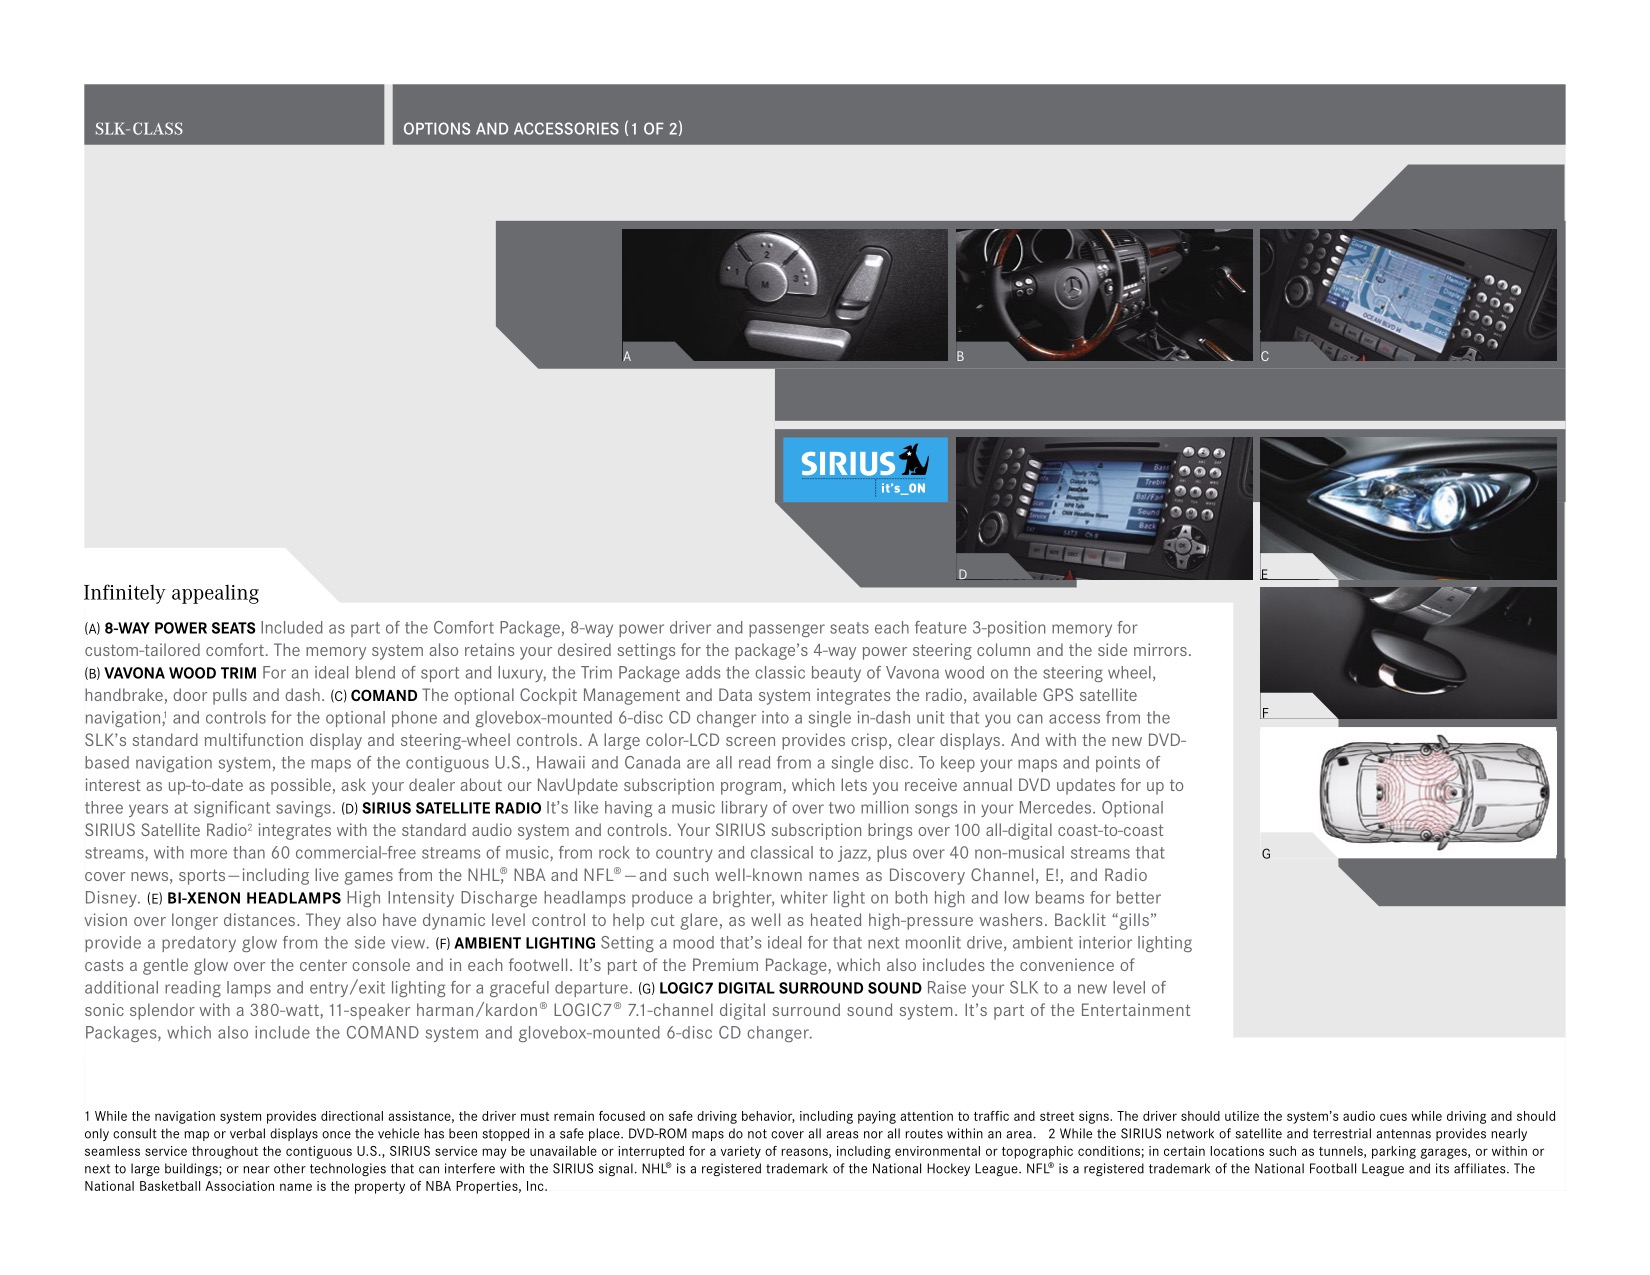 2005 Mercedes-Benz SLK Brochure Page 6